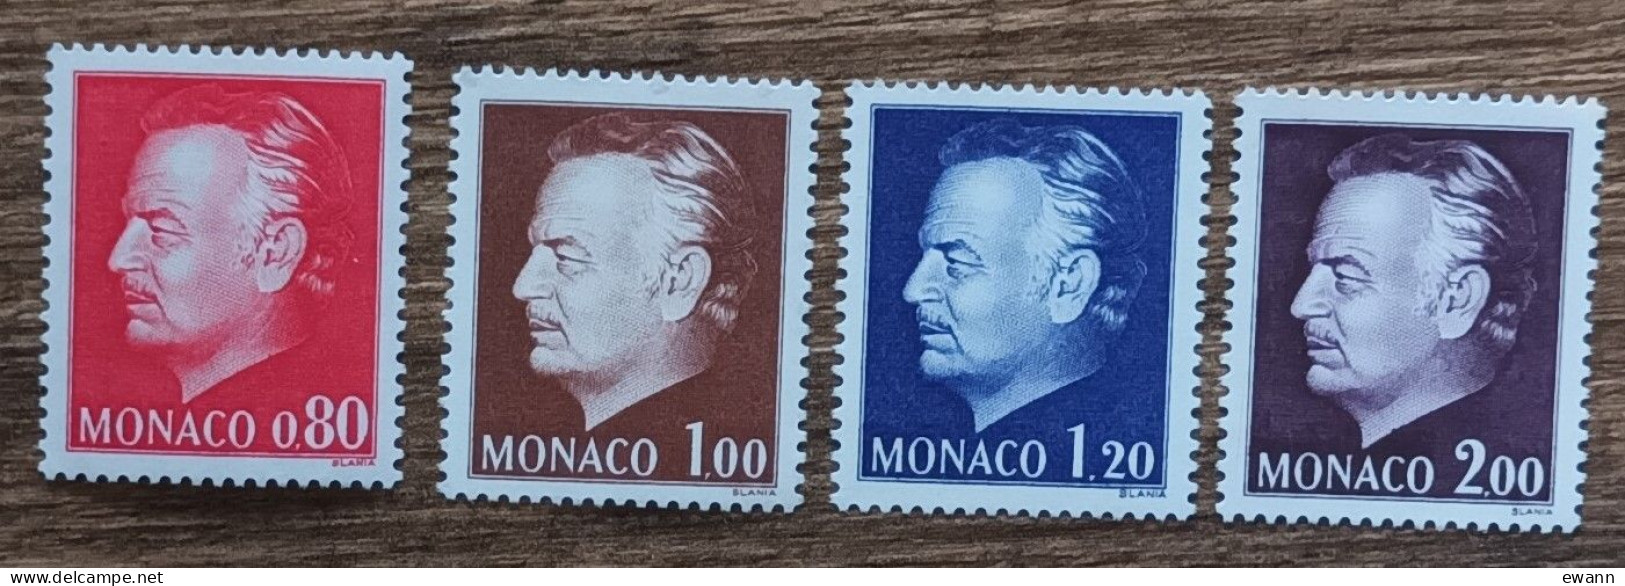 Monaco - YT N°993 à 996 - Nouvelle Effigie Du Prince Rainier III - 1974 - Neuf - Ungebraucht